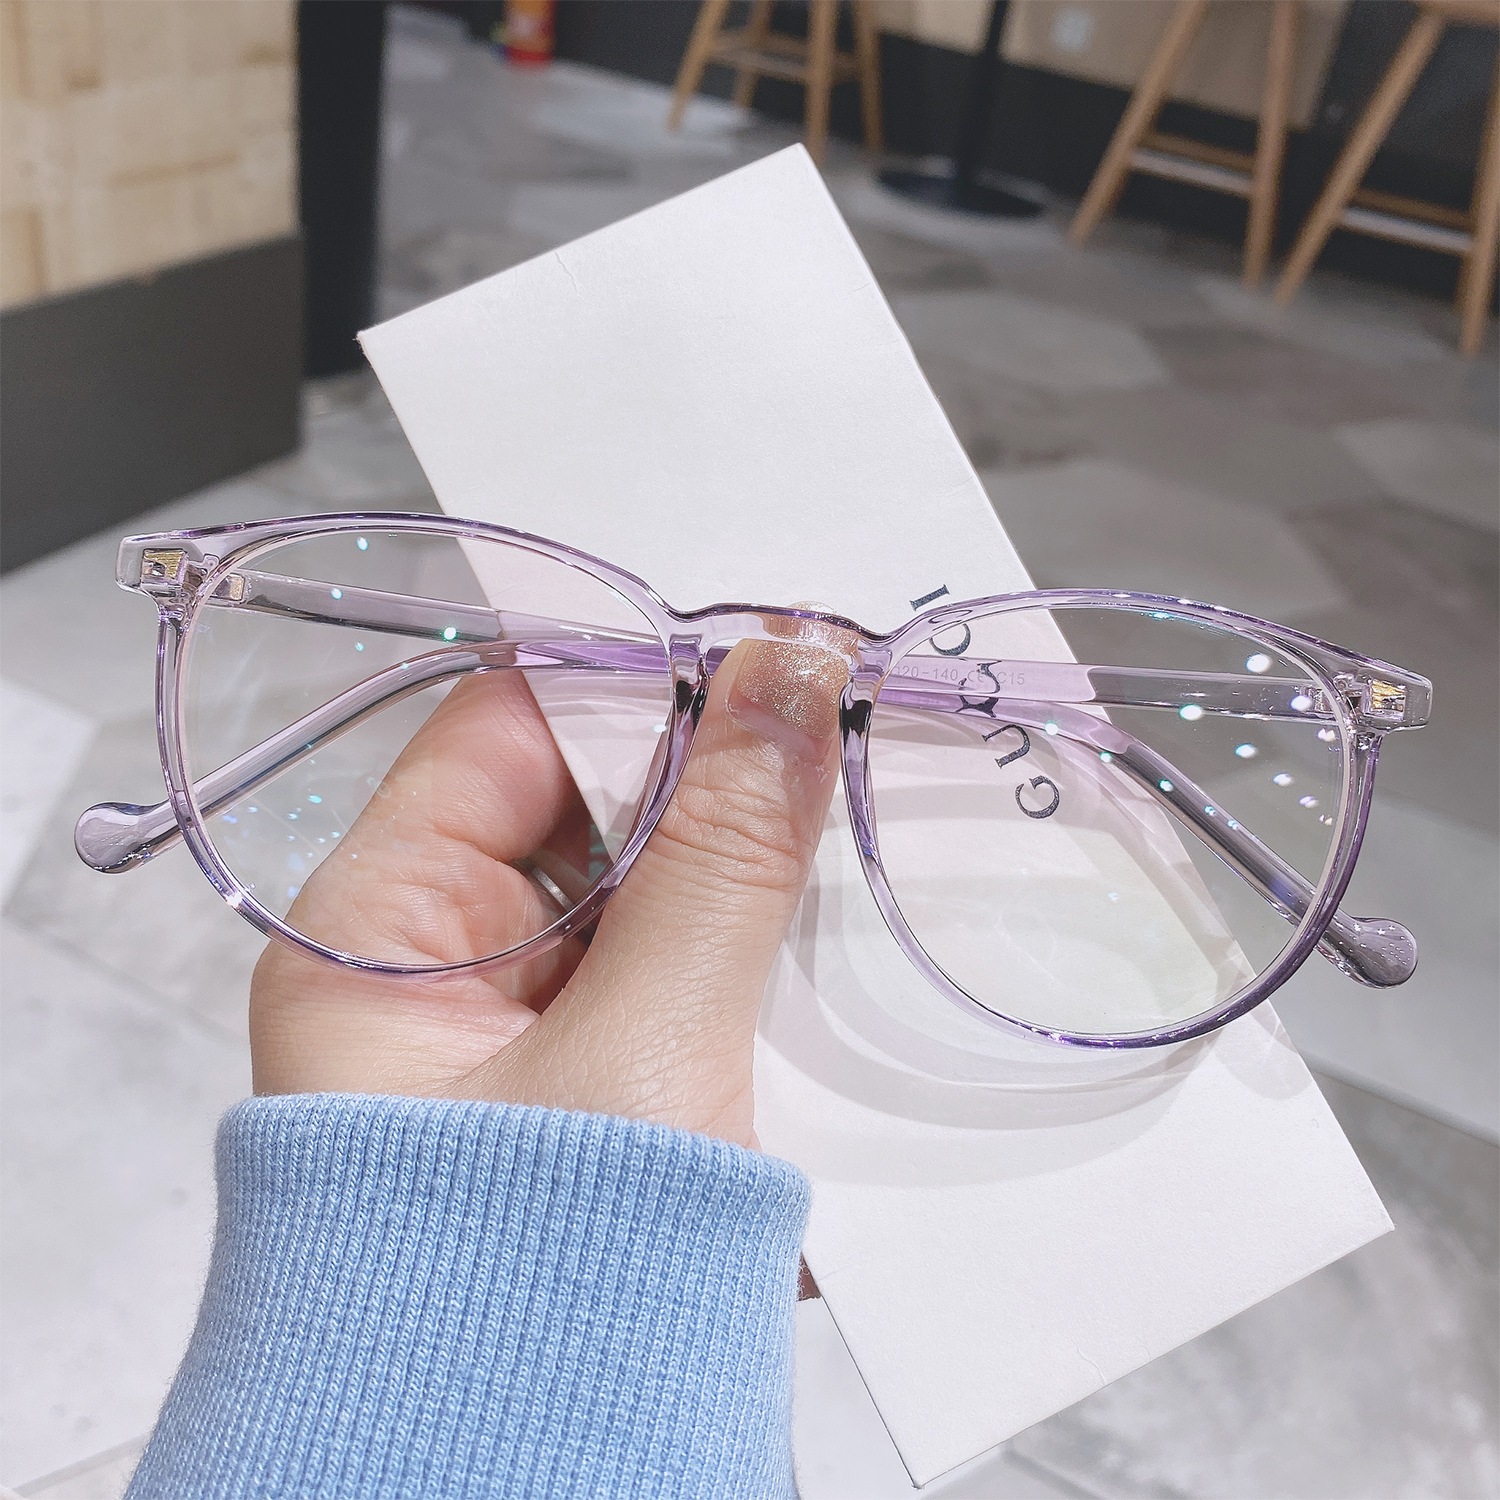 【初回限定お試し価格】 決算特価商品 メガネ 眼鏡 サングラス 男女兼用A10  透明フレーム